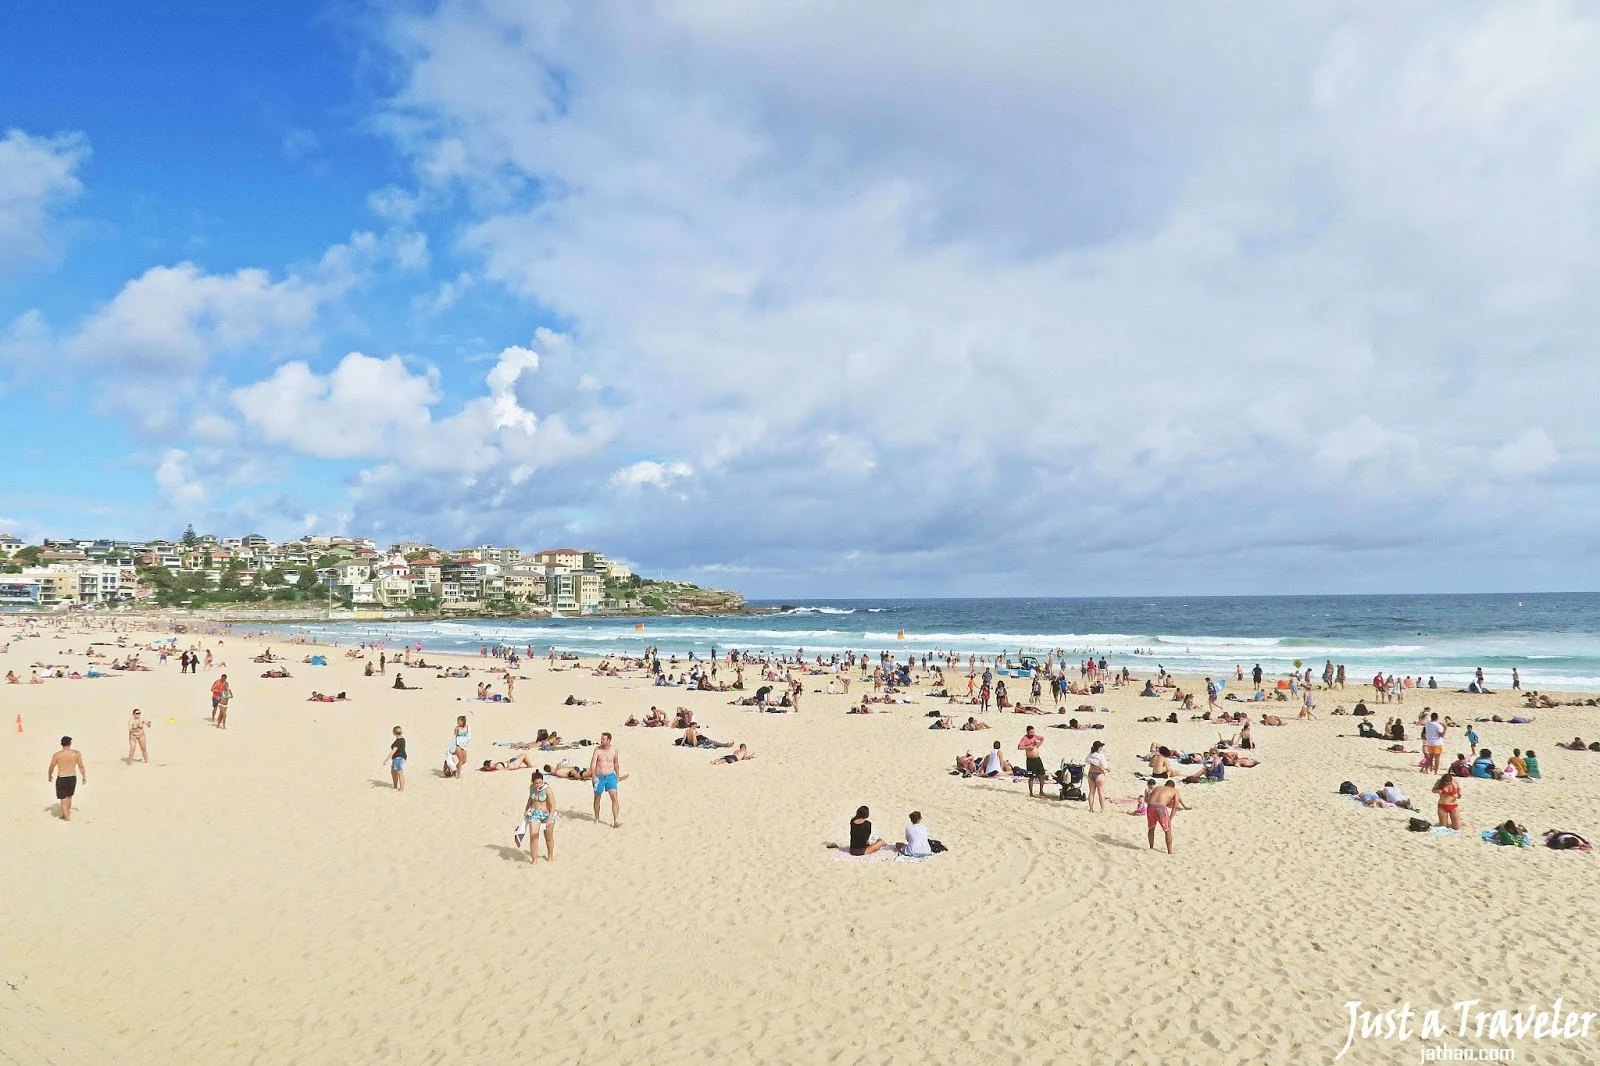 澳洲-雪梨-雪梨景點-市區-推薦-雪梨必去景點-邦代海灘-雪梨旅遊景點-雪梨行程-雪梨一日遊-雪梨景點地圖-雪梨自由行-悉尼景點-Sydney-Tourist-Attraction-Bondi-Beach-Travel-Australia